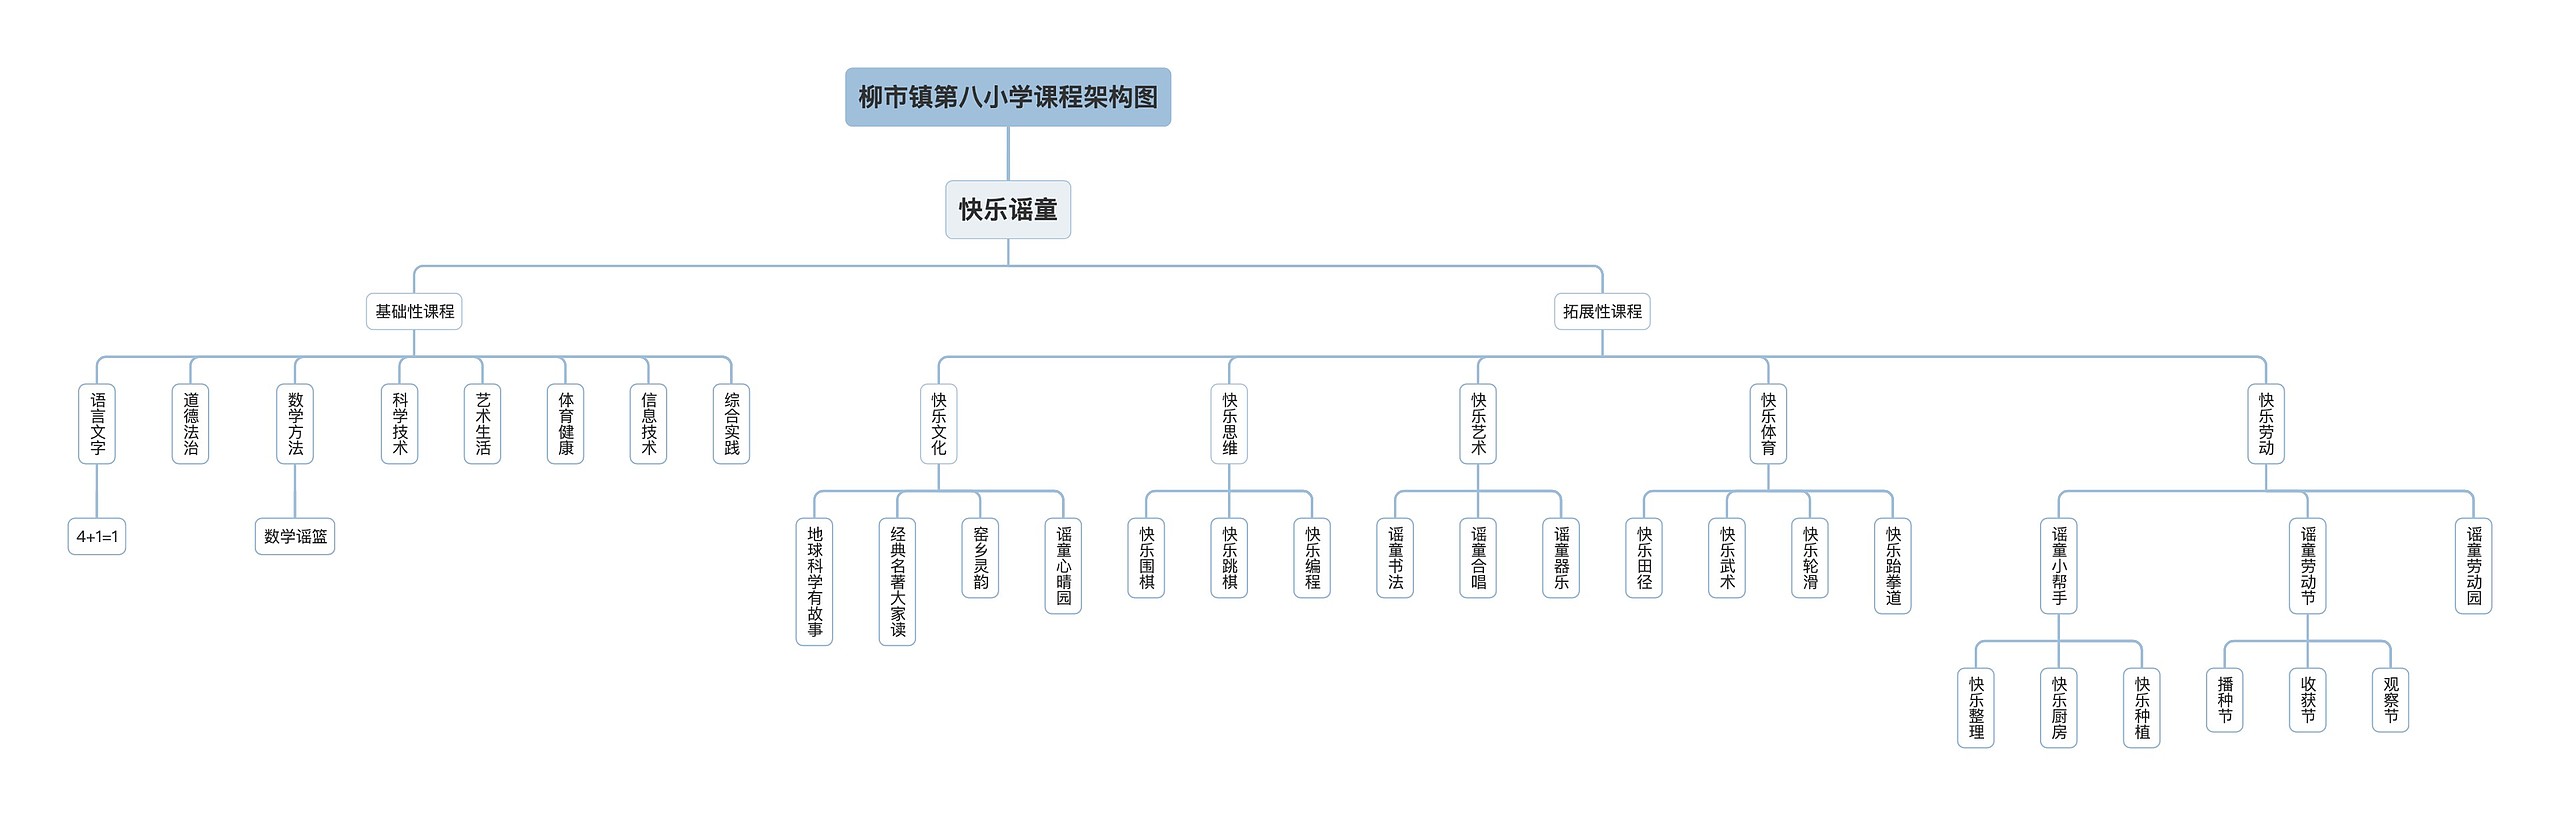 柳市镇第八小学课程架构图